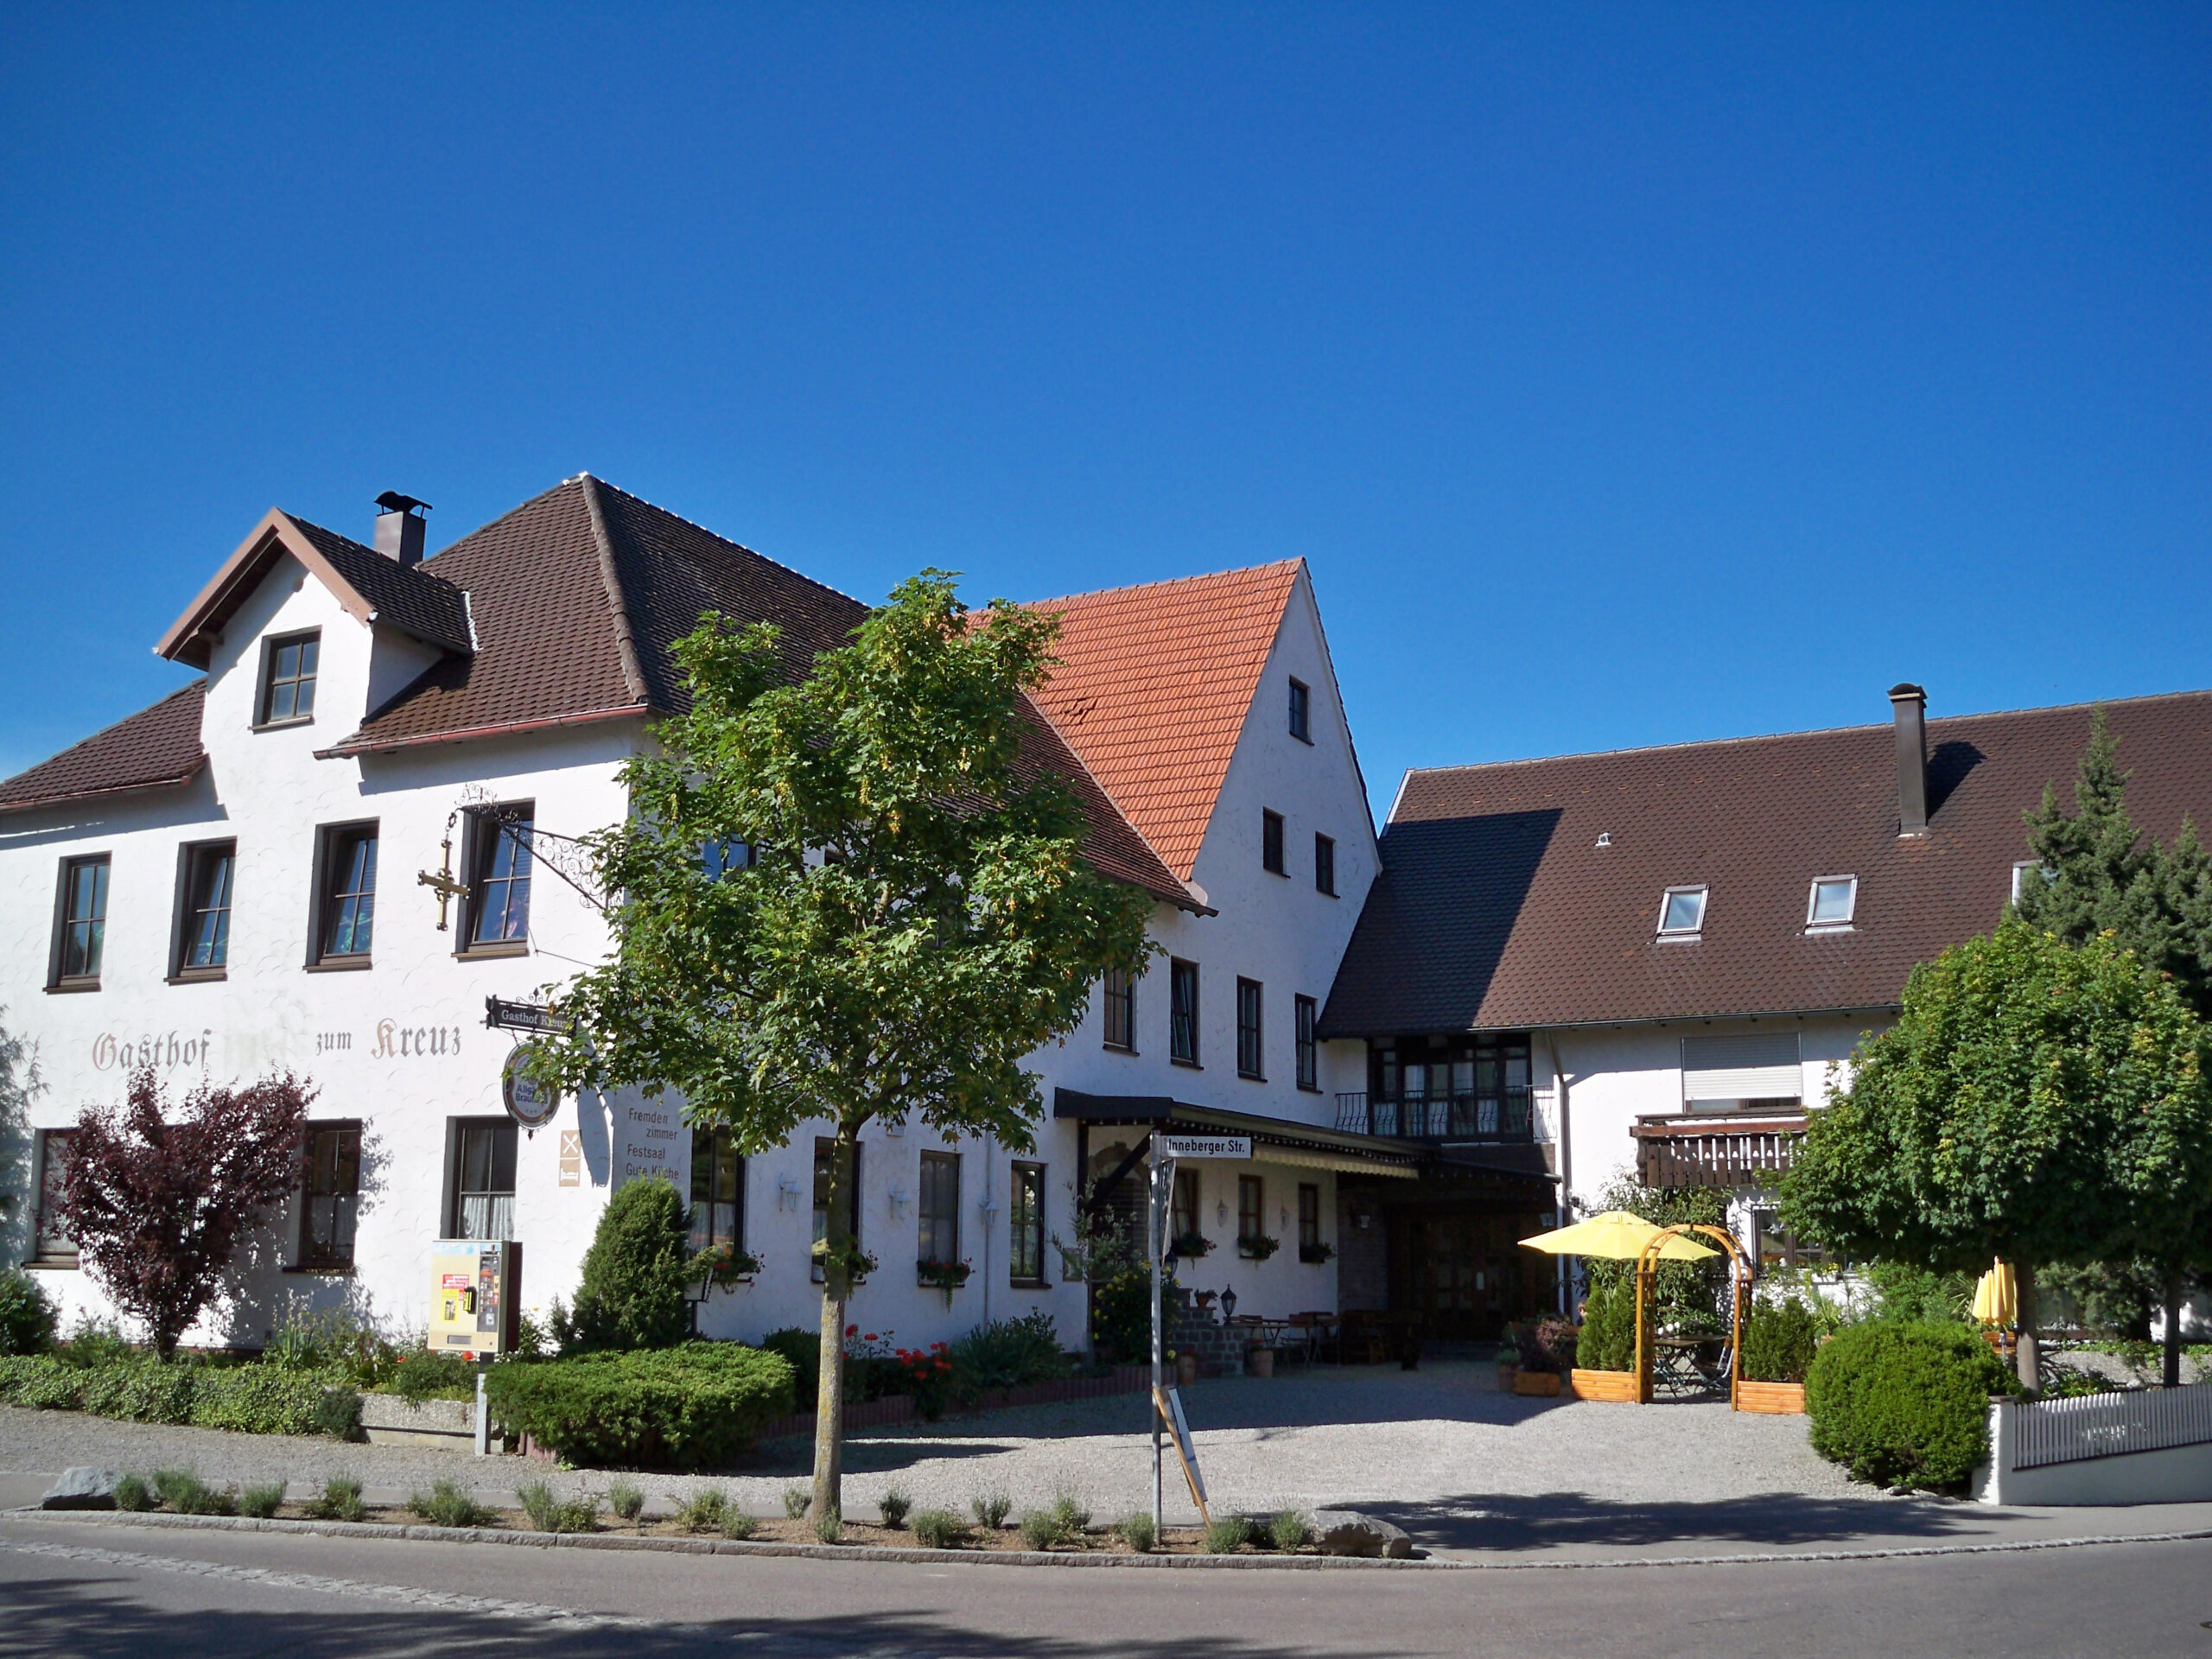 Gasthof & Gästezimmer zum Kreuz in Egg bei Altenstadt